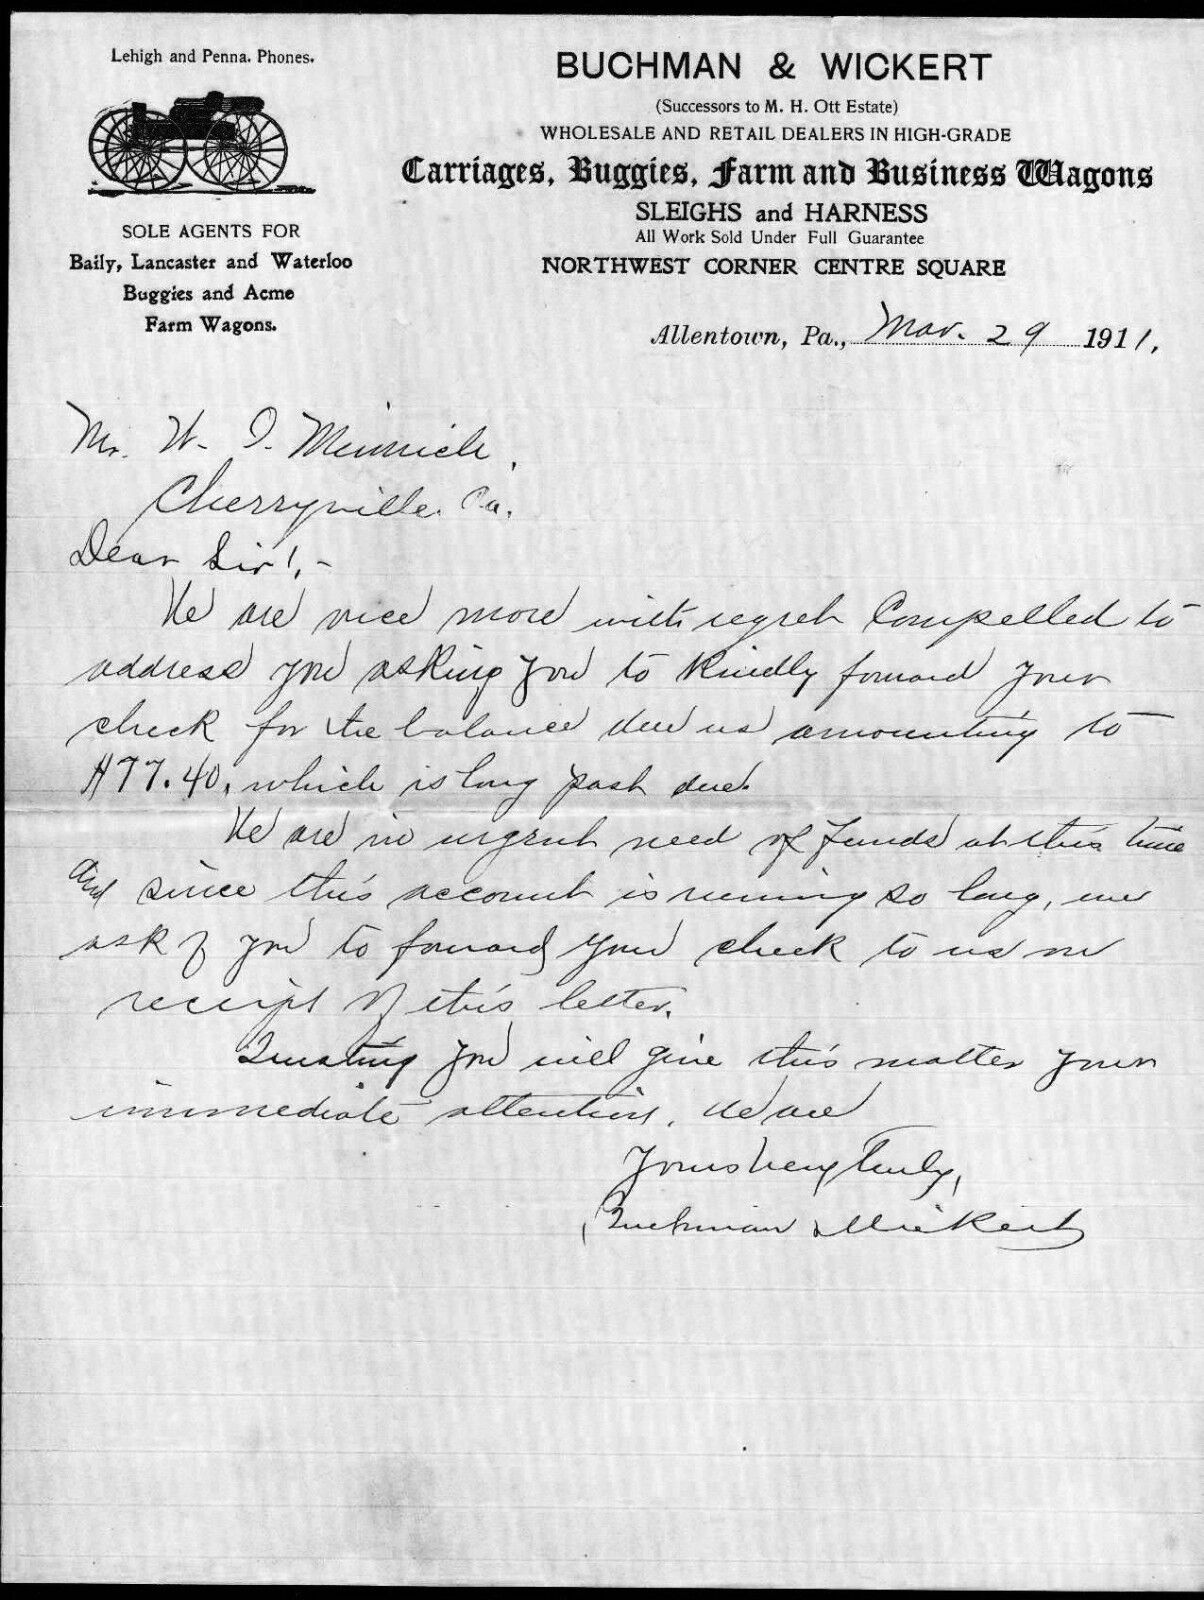 1911 Allentown Pa - Buchman & Wickert - Carriages Farm Wagons - Letter Head Bill